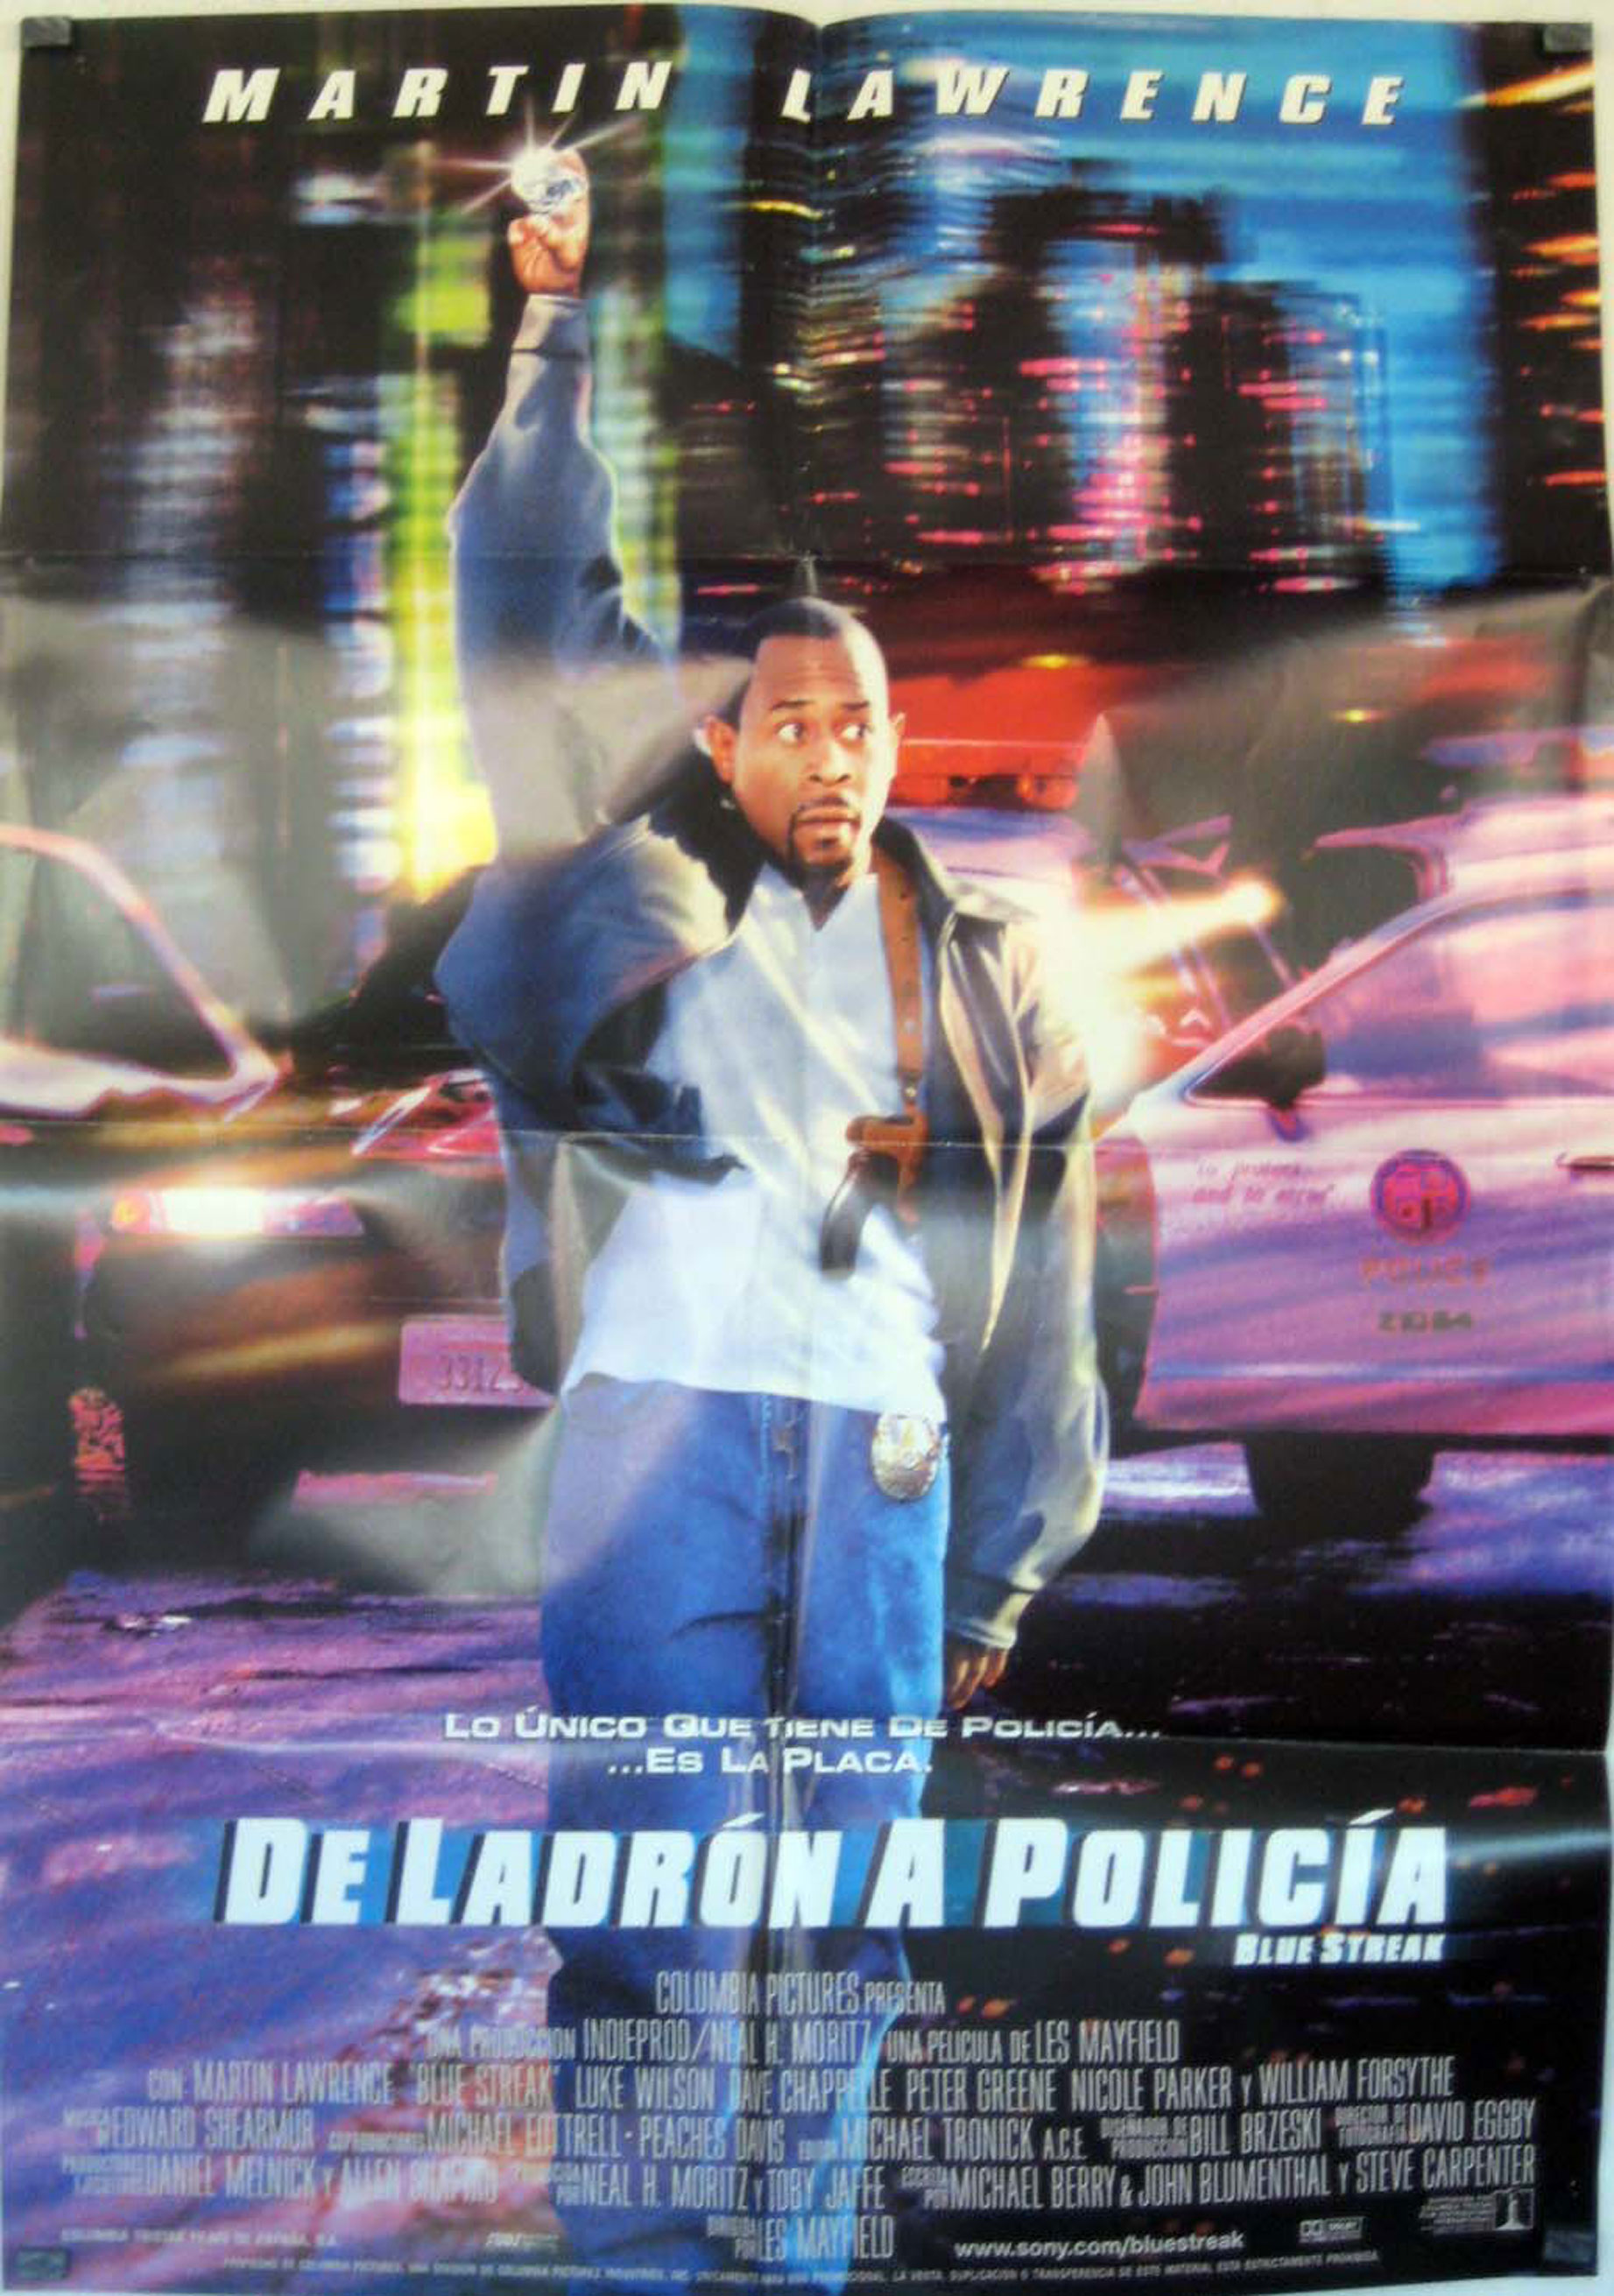 DE LADRON A POLICIA